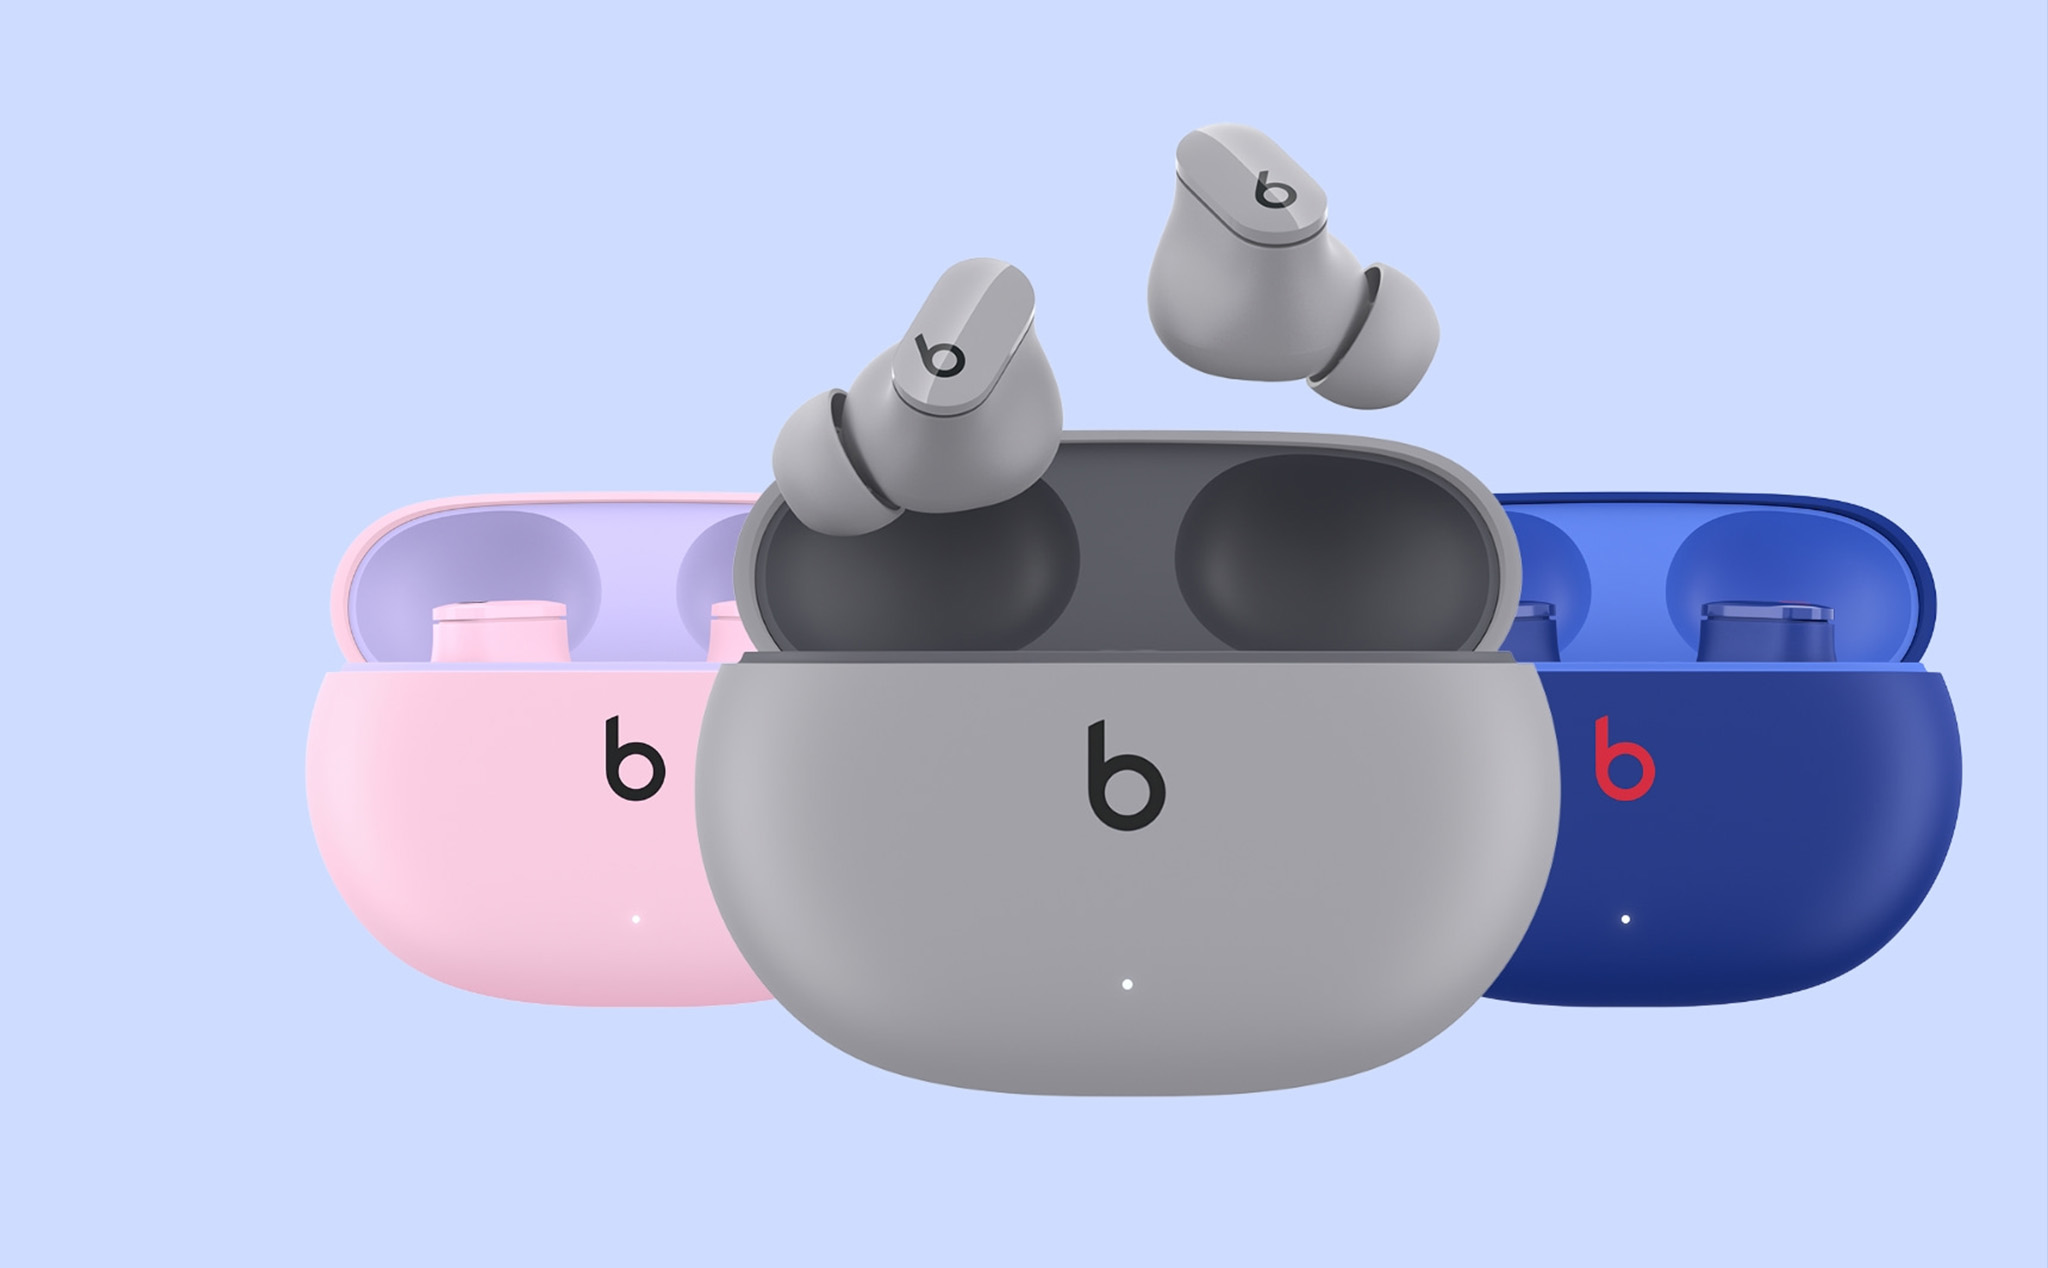 Mẫu tai nghe Beats Studio Buds vừa được bổ sung thêm 3 màu mới là hồng, xám và xanh dương. Giá bán của Beats Studio Buds vẫn không thay đổi là 149 USD (khoảng 3,5 triệu đồng).